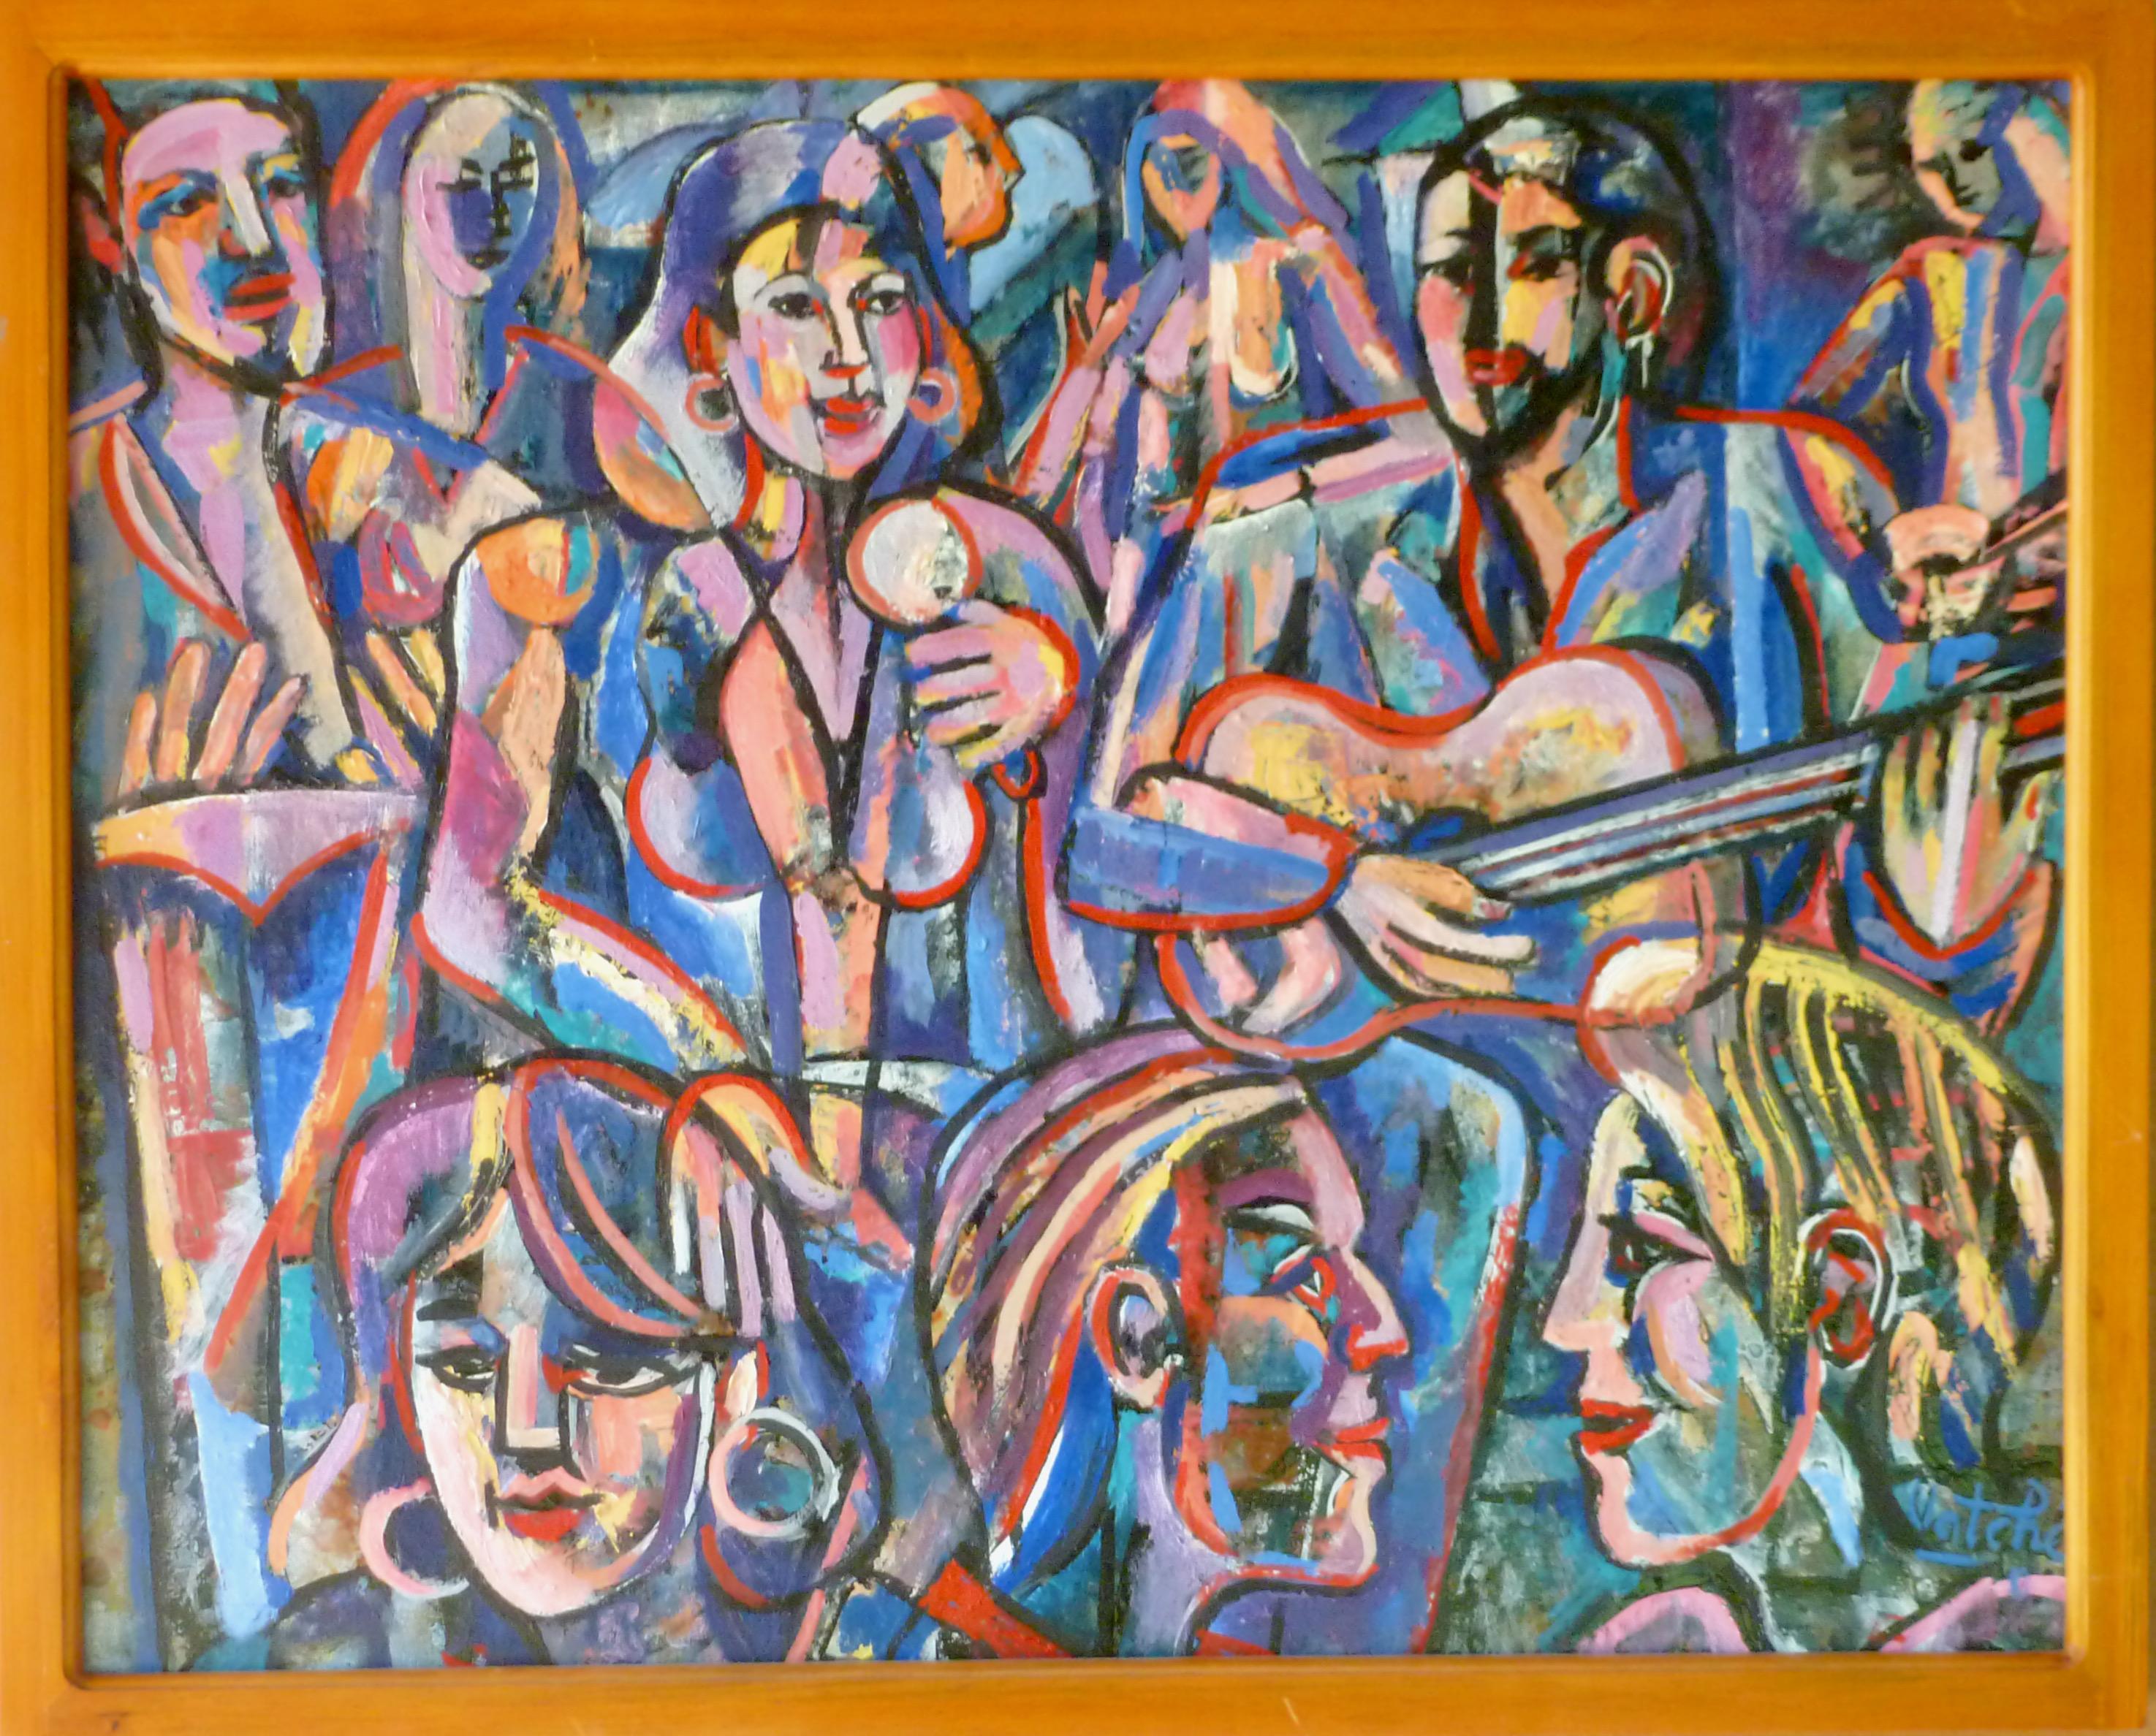 Musiker bei einer Party 2022 farbenfrohe Öl/Leinwand abstrakte surreale armenische Künstlerin – Painting von Vatche Geuvdjelian 